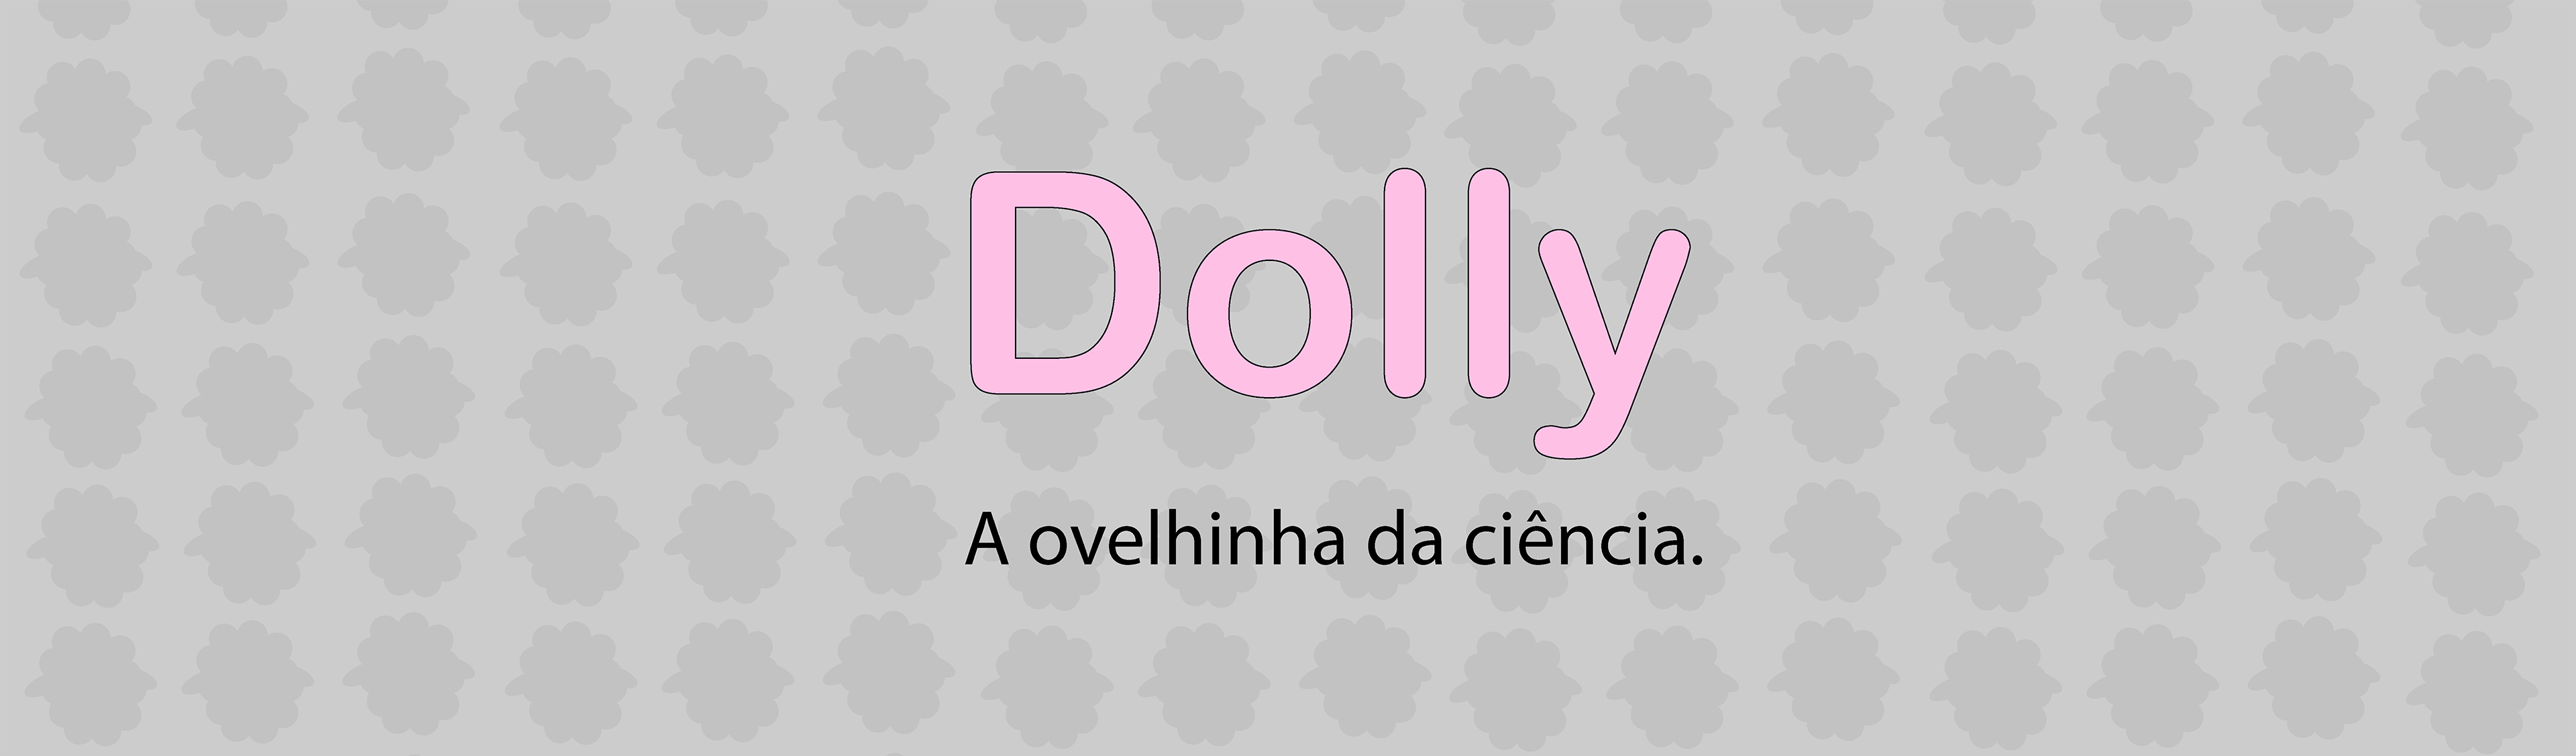 Dolly: A ovelhinha da ciência